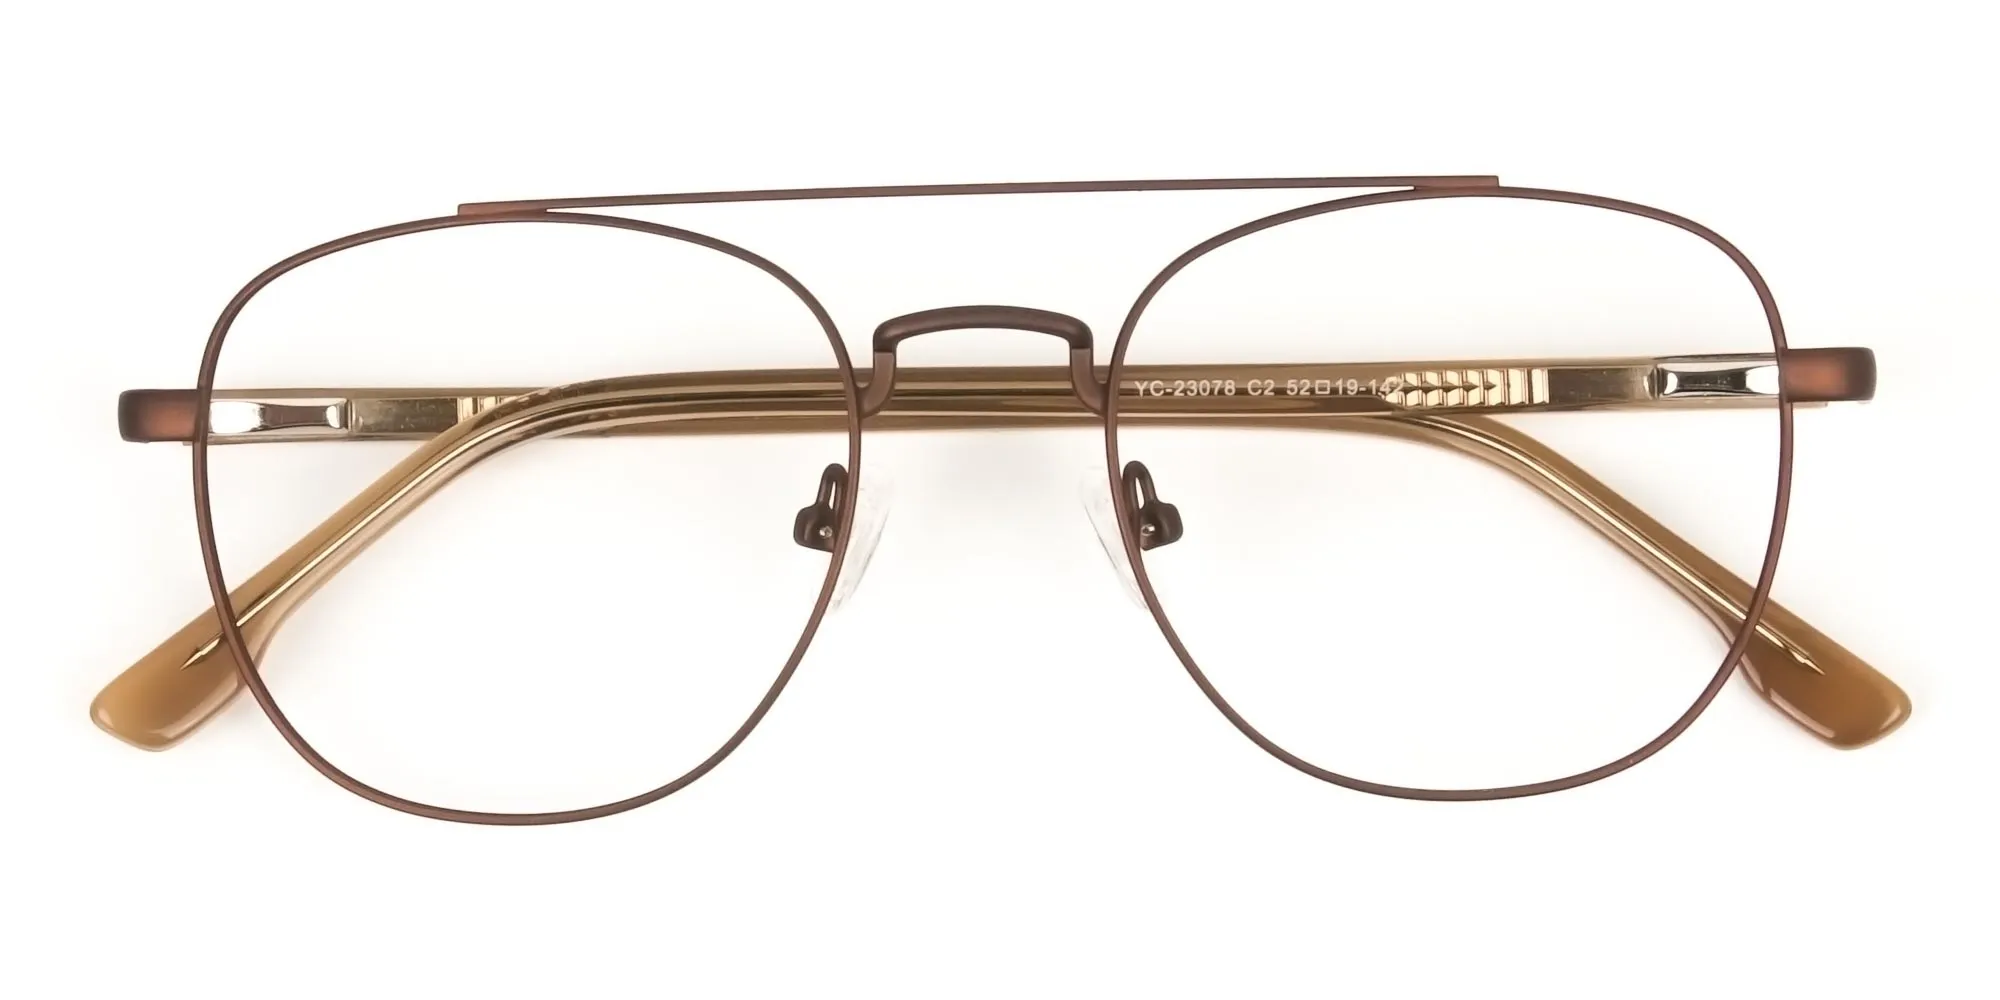 Honey Brown Aviator Wayfarer Glasses in Metal - 2